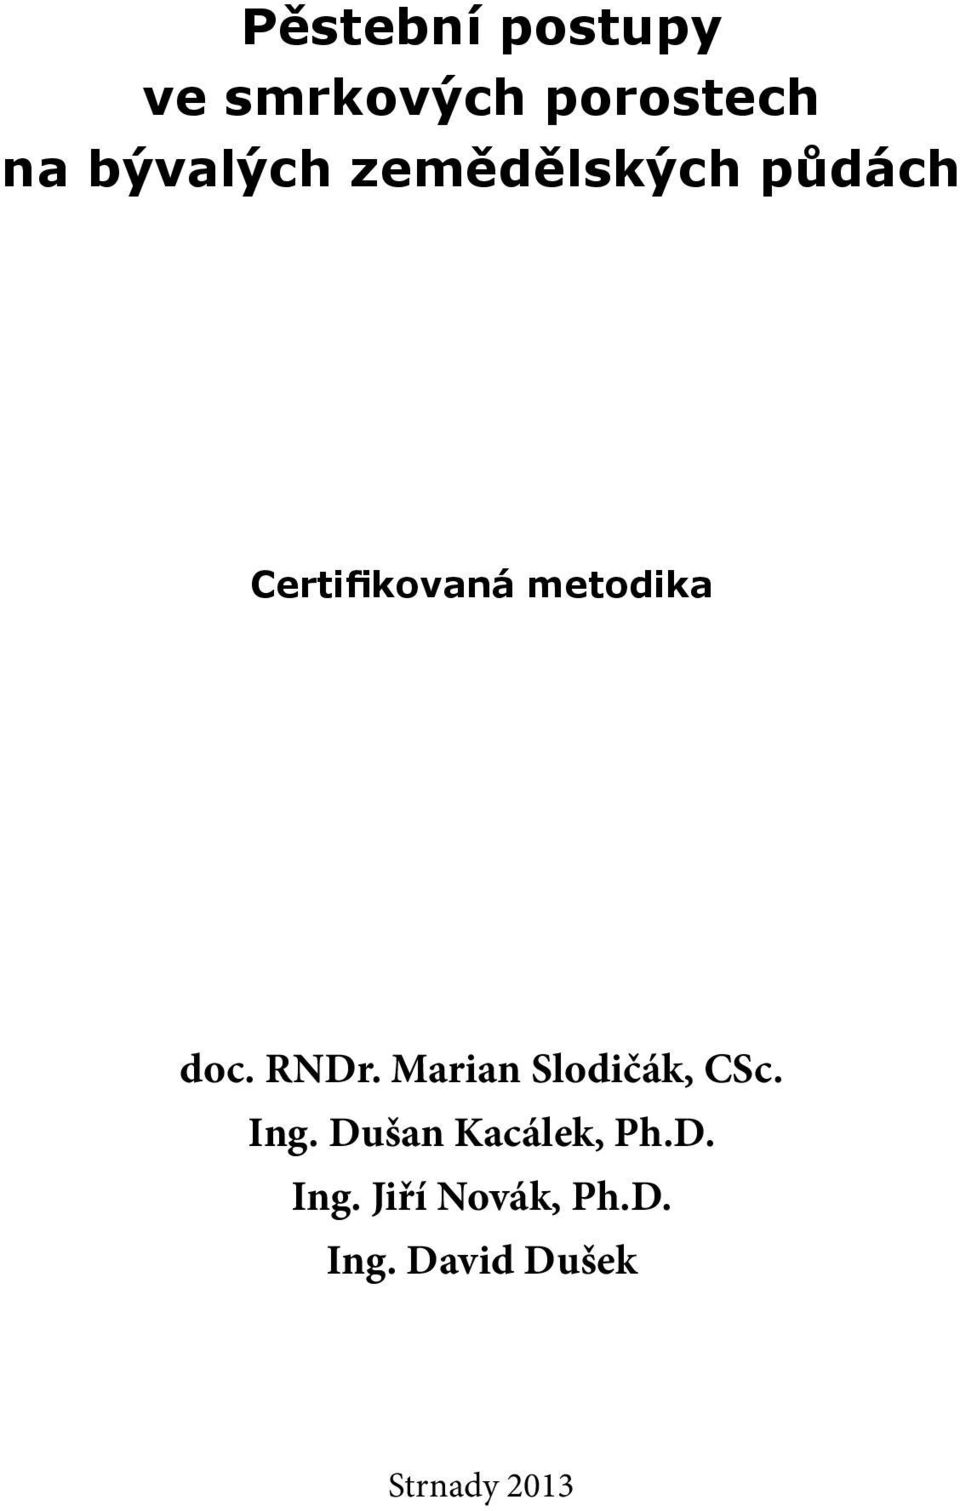 RNDr. Marian Slodičák, CSc. Ing. Dušan Kacálek, Ph.